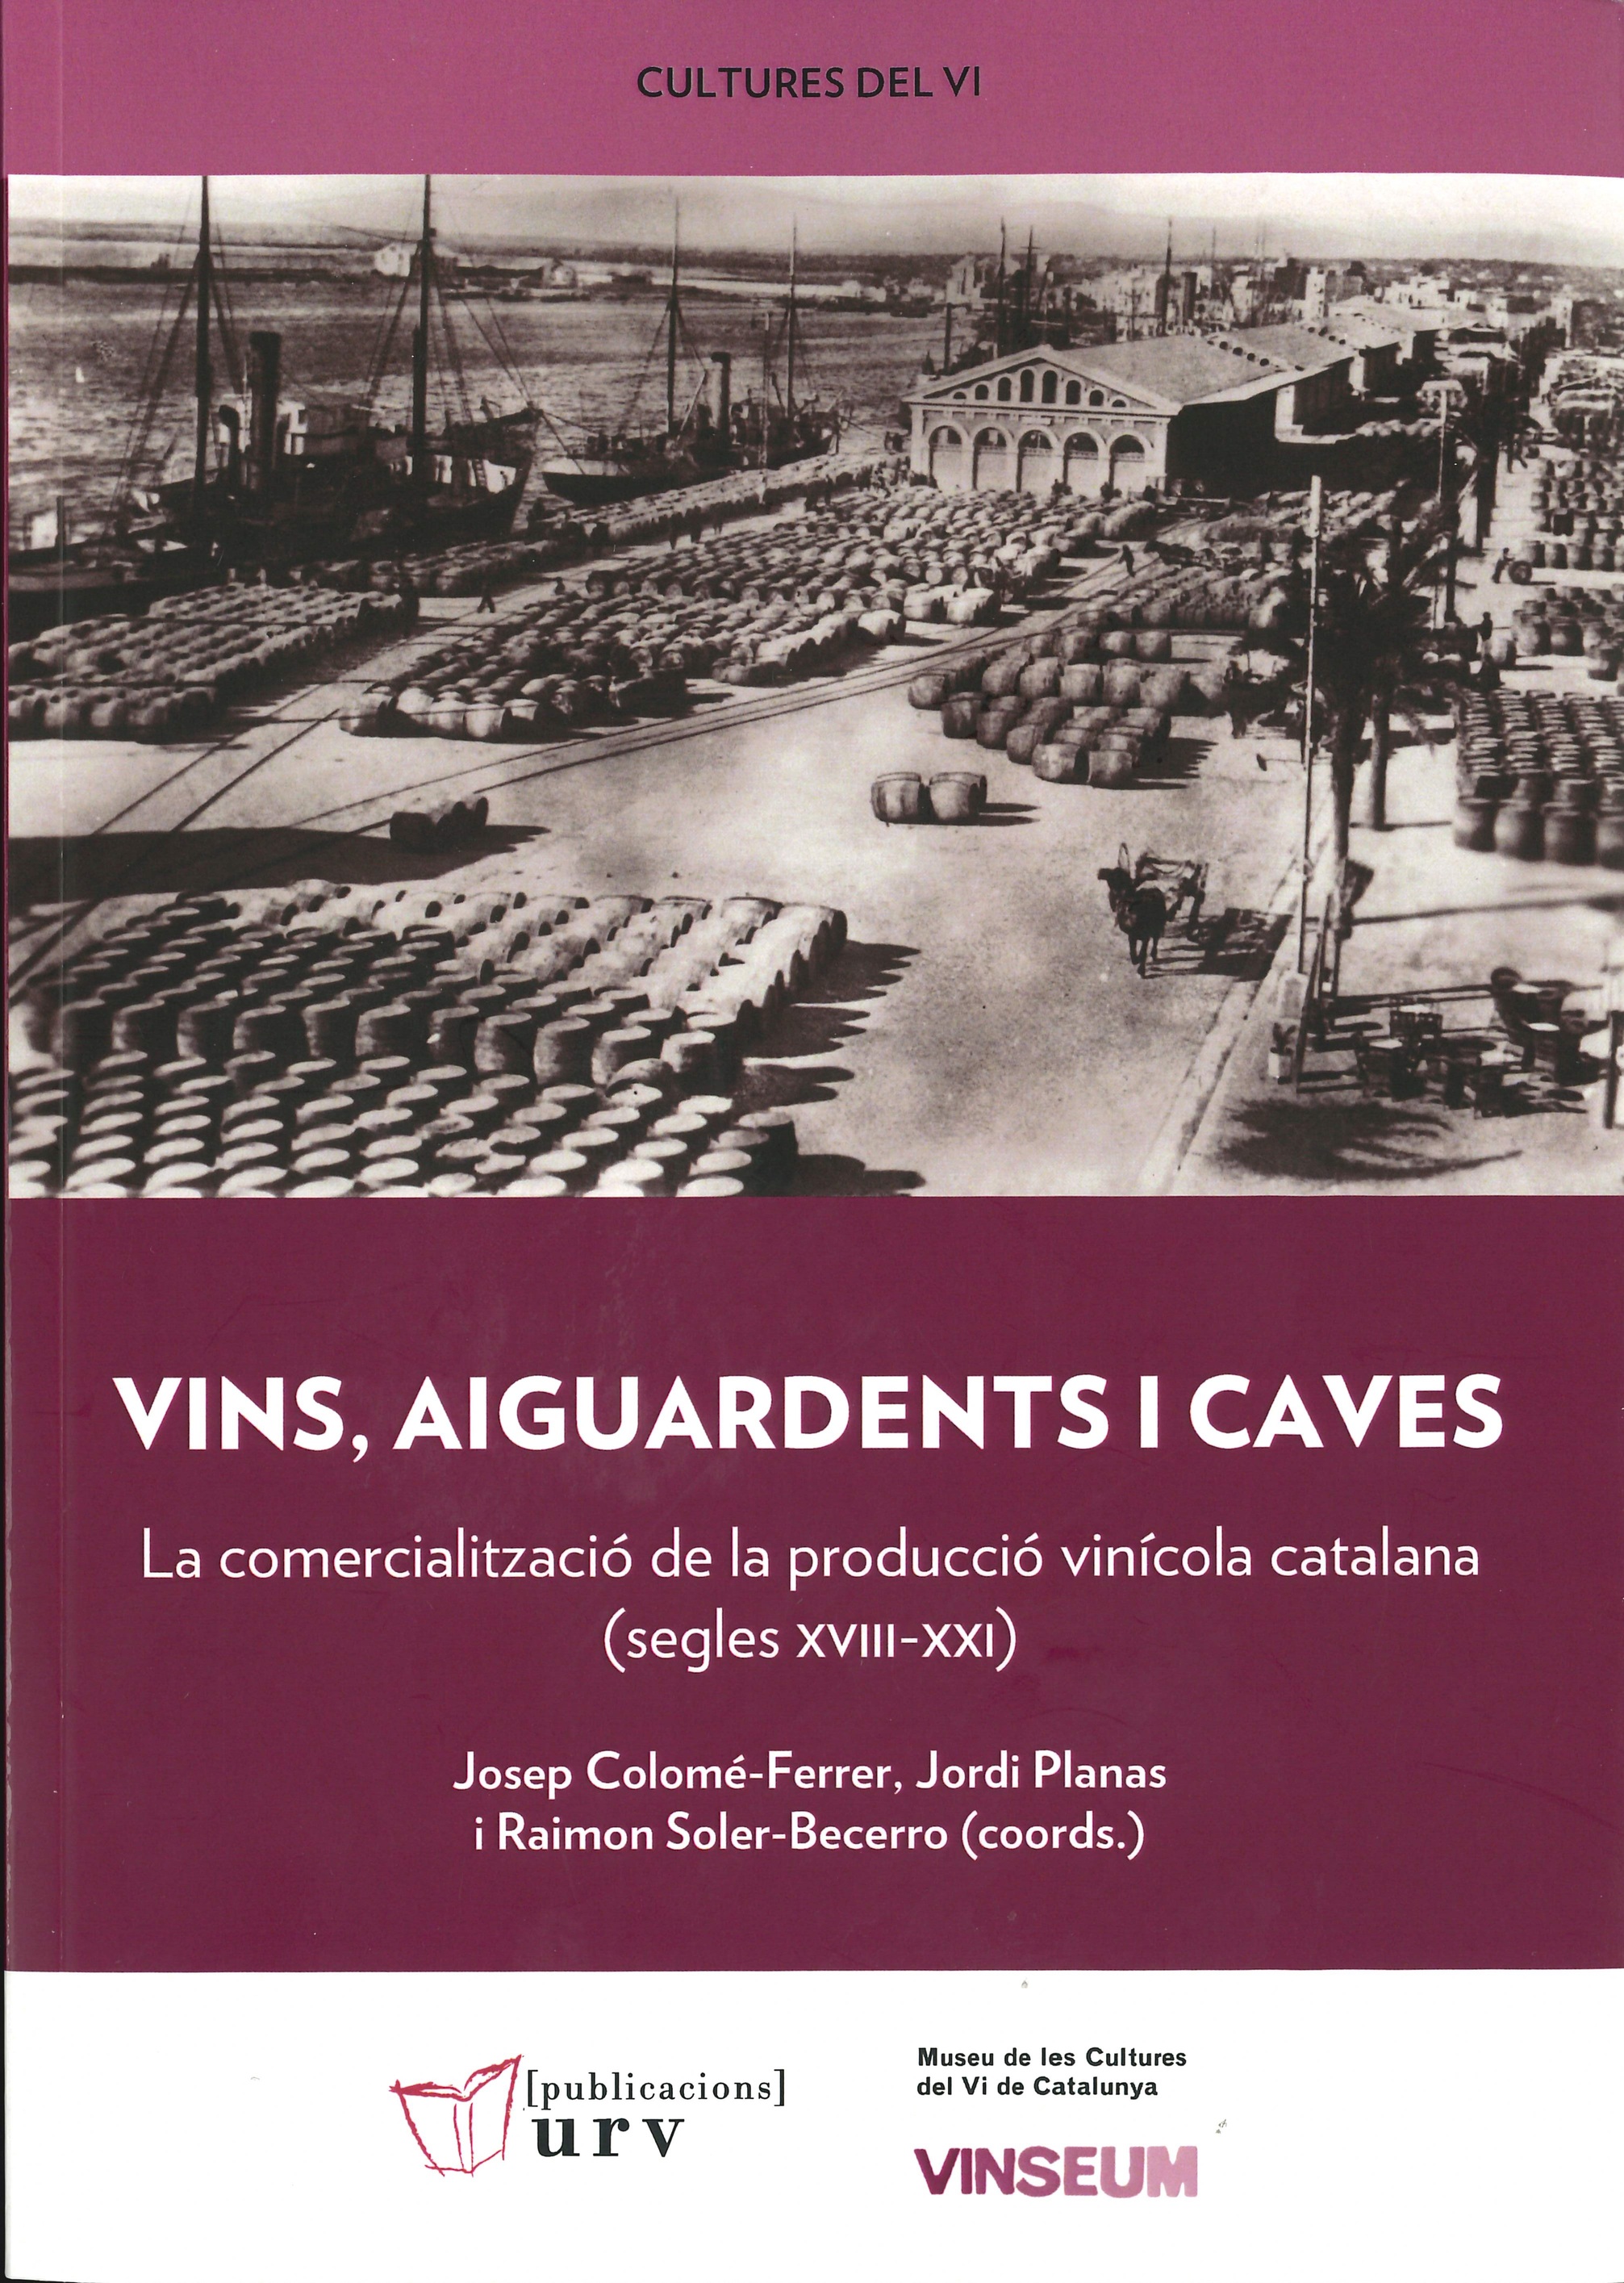 Imagen de portada del libro Vins, aiguardents i caves